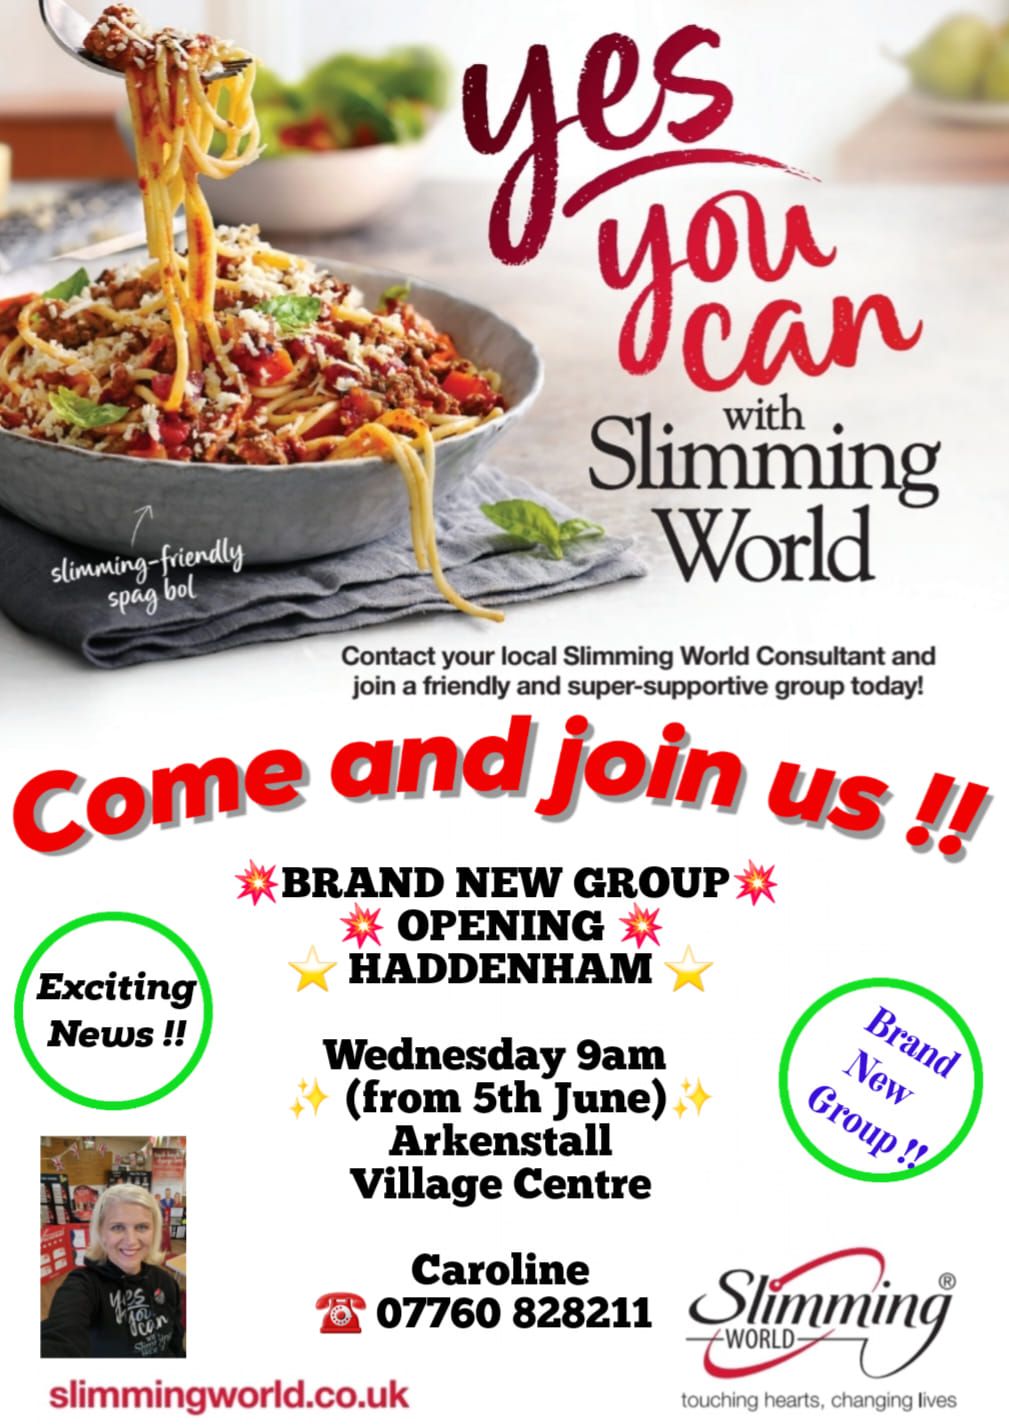 New Slimming World Group Opening in Haddenham 